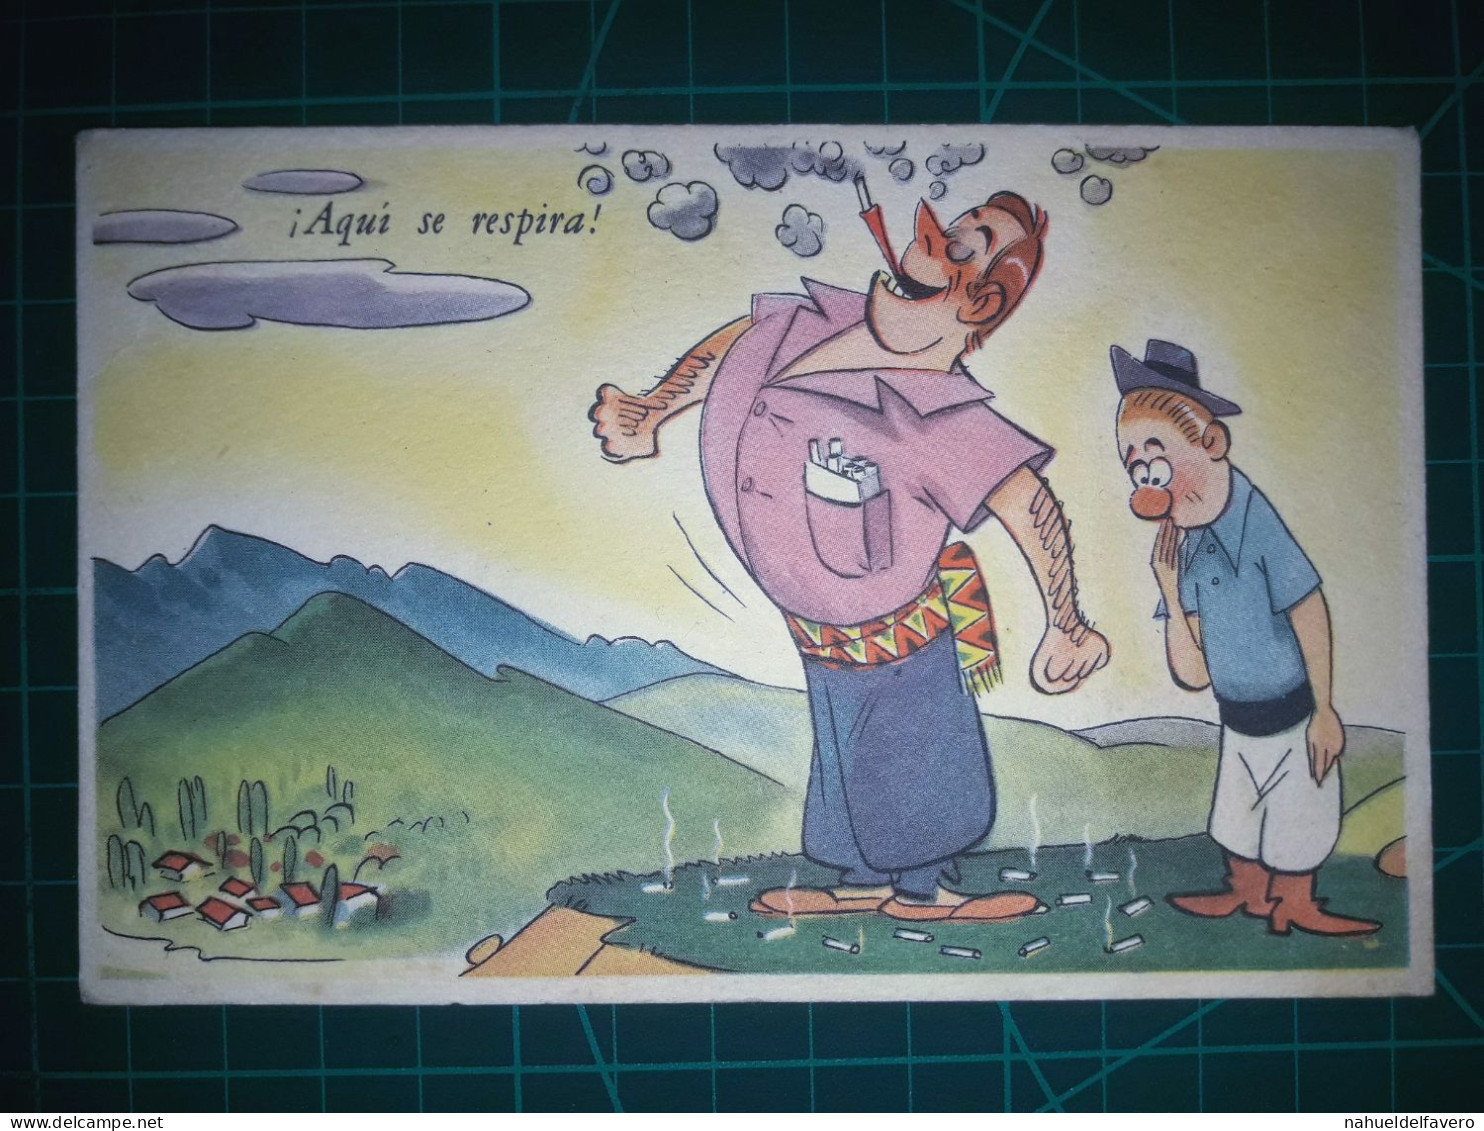 ARGENTINE, Carte Postale Vintage, Illustration Amusante Avec Des Caricatures Drôles Et Hilarantes. Comédie, Humour.. - Humour